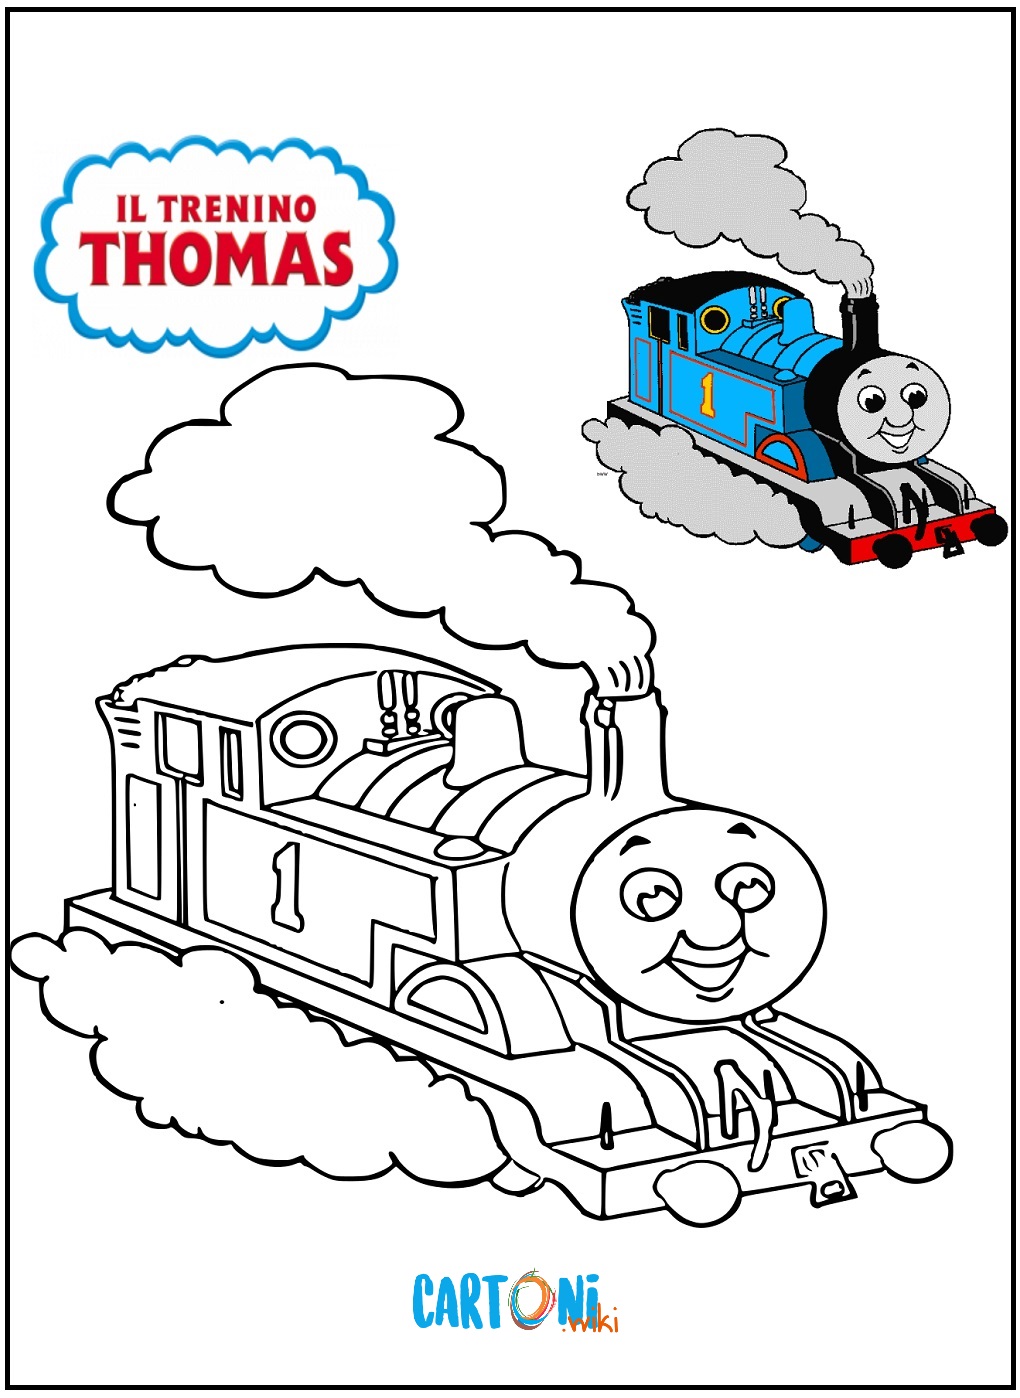 Disegno Il trenino Thomas da stampare